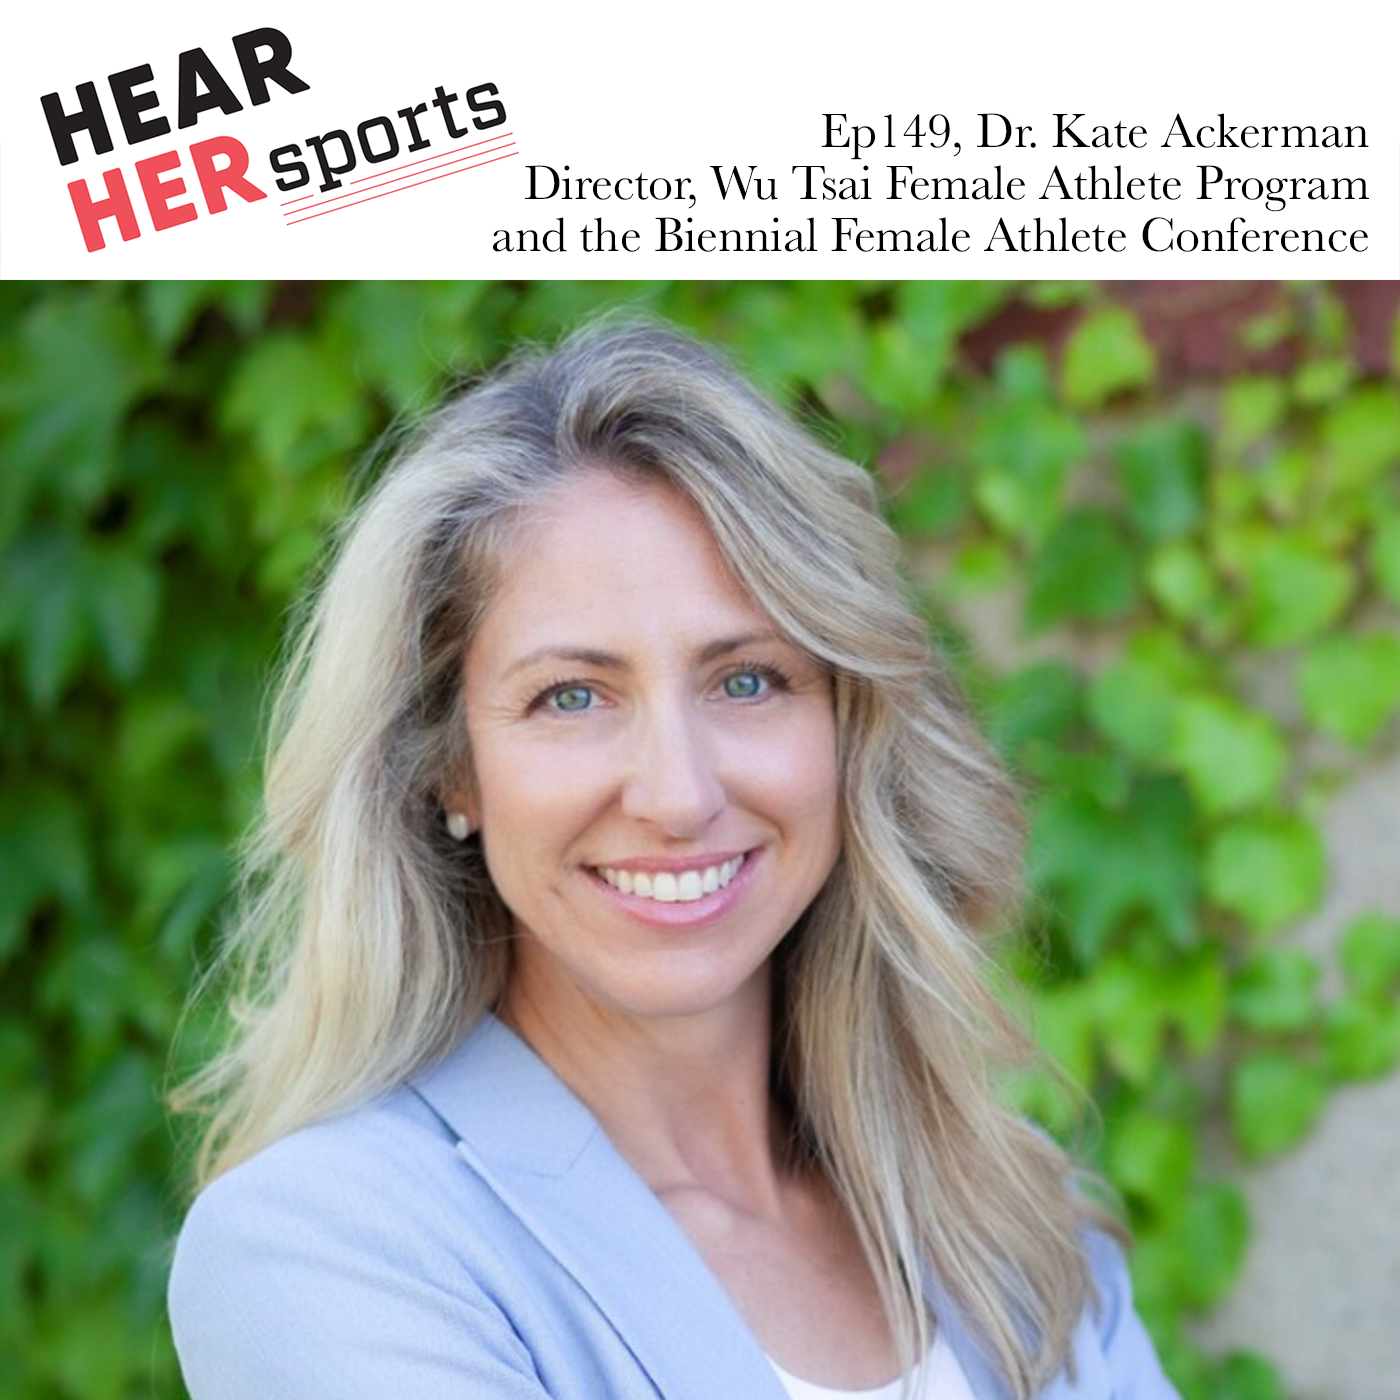 Dr. Kate Ackerman Female Athlete Program